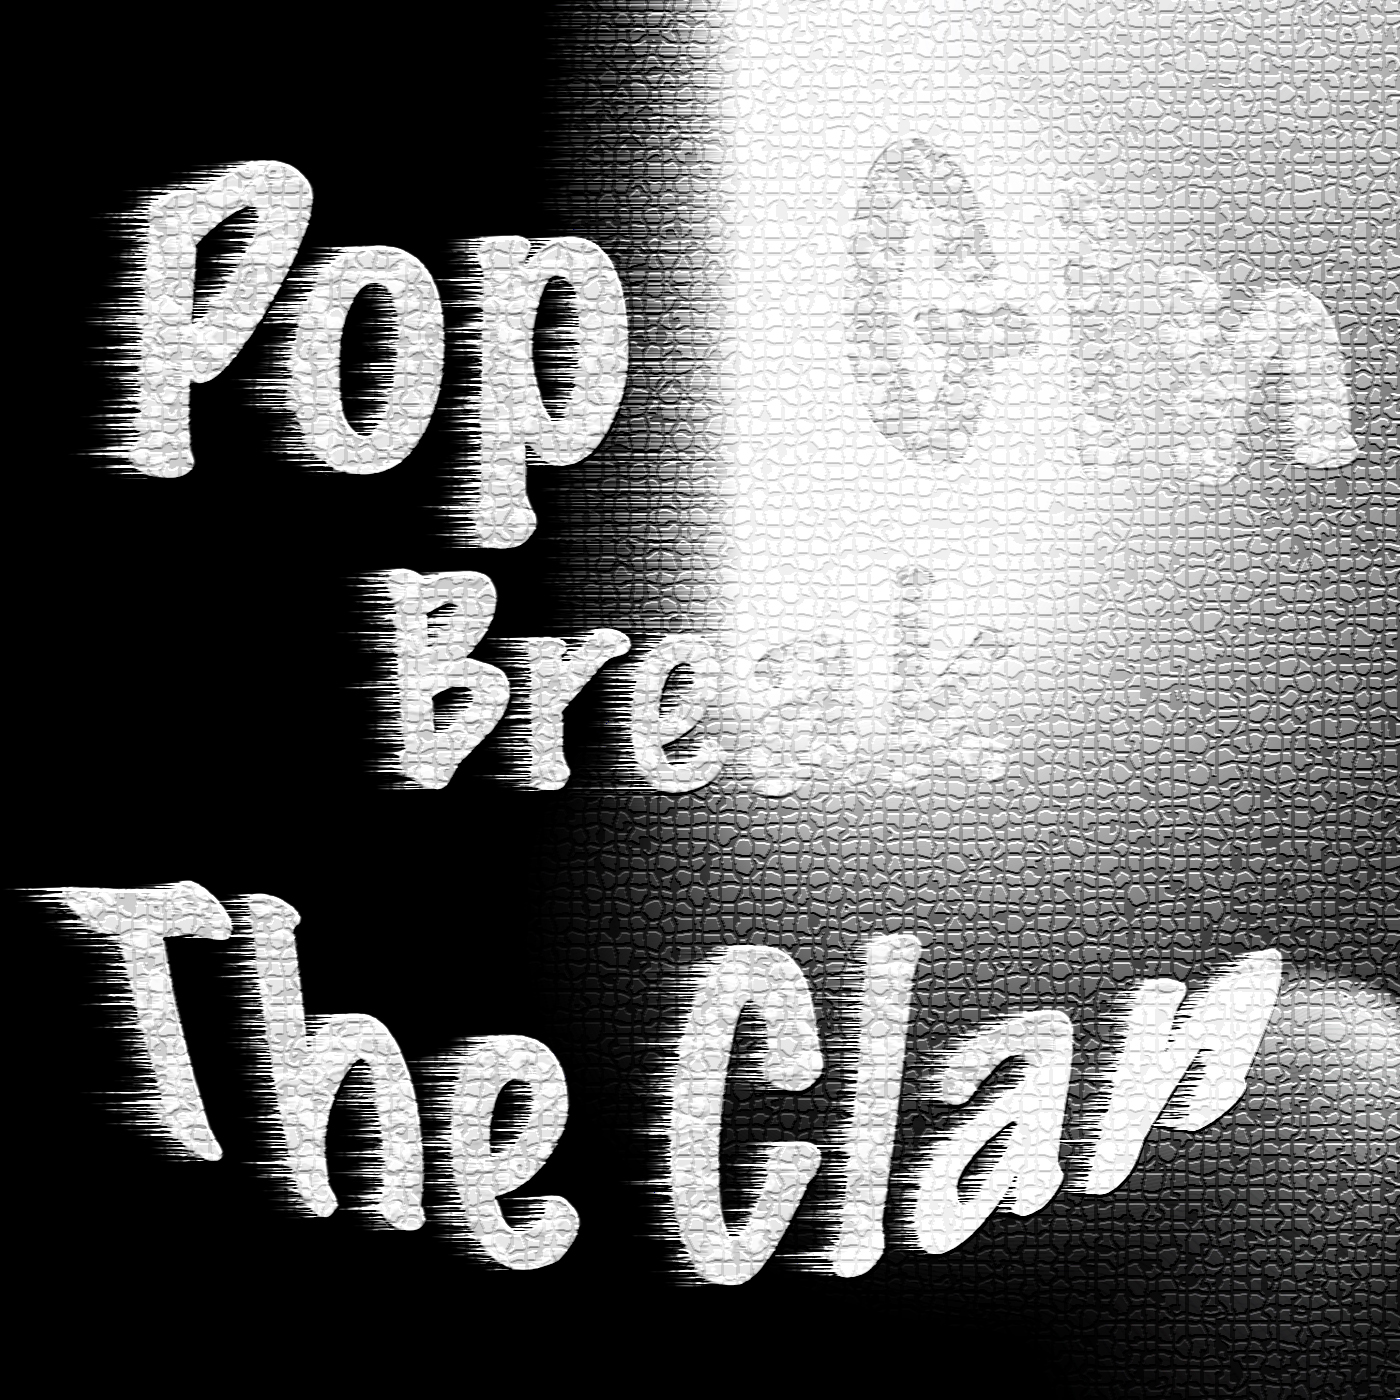 Break The Clan